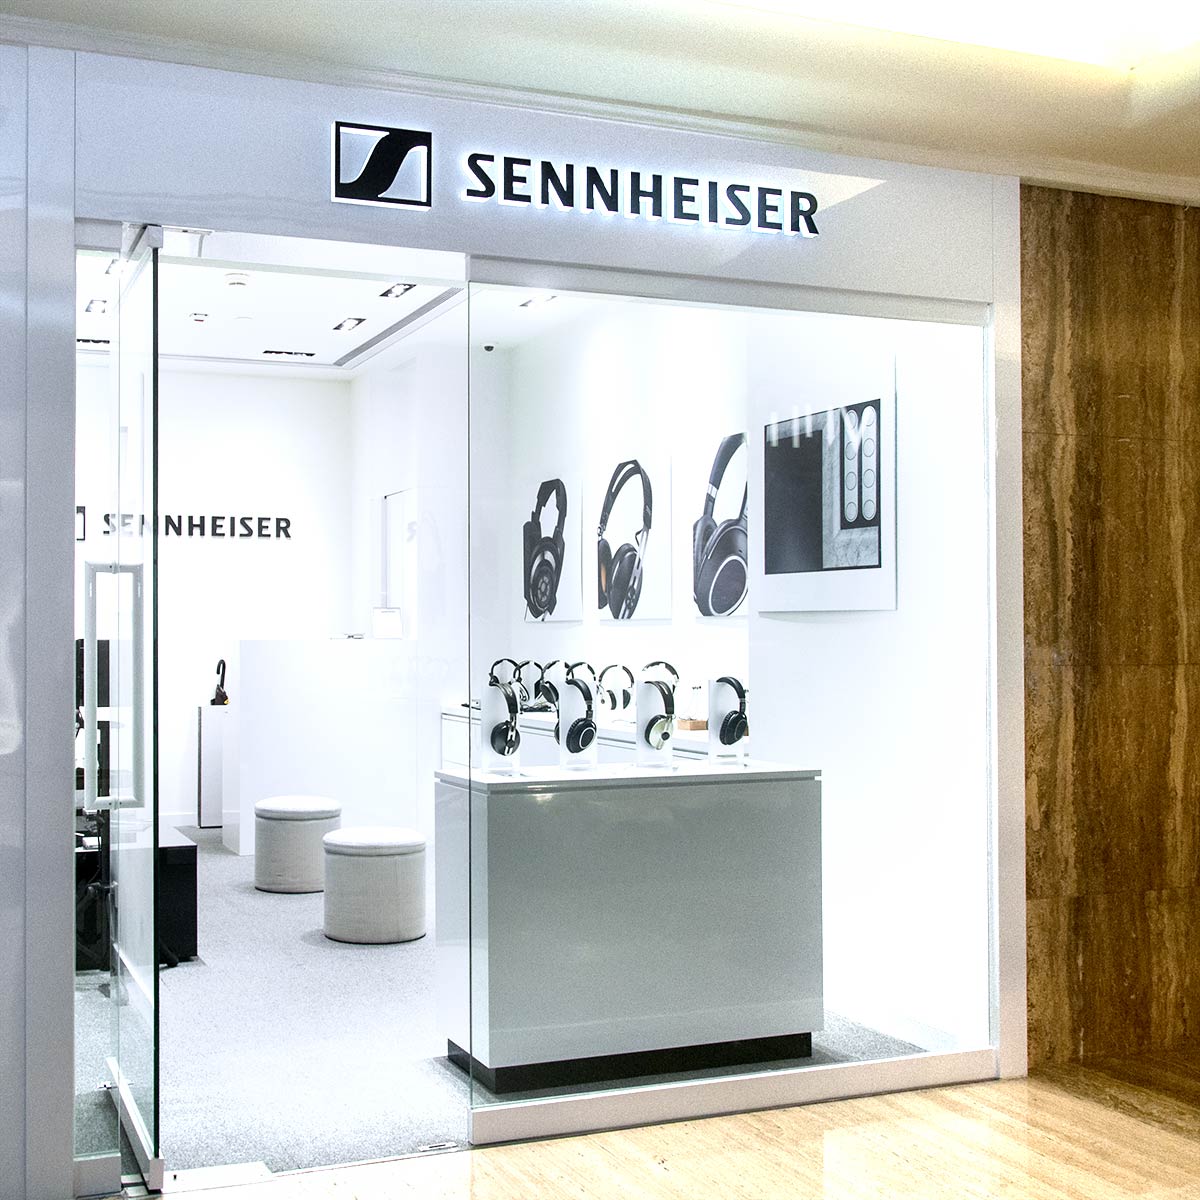 超過 70 年歷史的 Sennheiser，已是無人不識的耳機品牌。最近在香港、台灣等地開設專門店，讓 Sennheiser的 fans 能更容易接觸到品牌產品。於上月在尖沙咀半島酒店的 The Peninsula Arcade 正式開設首間專門店，在店內放置了價值 5 萬歐元的 Sennheiser HE 1，毋須提早預約，walk in 就可以任玩任試。